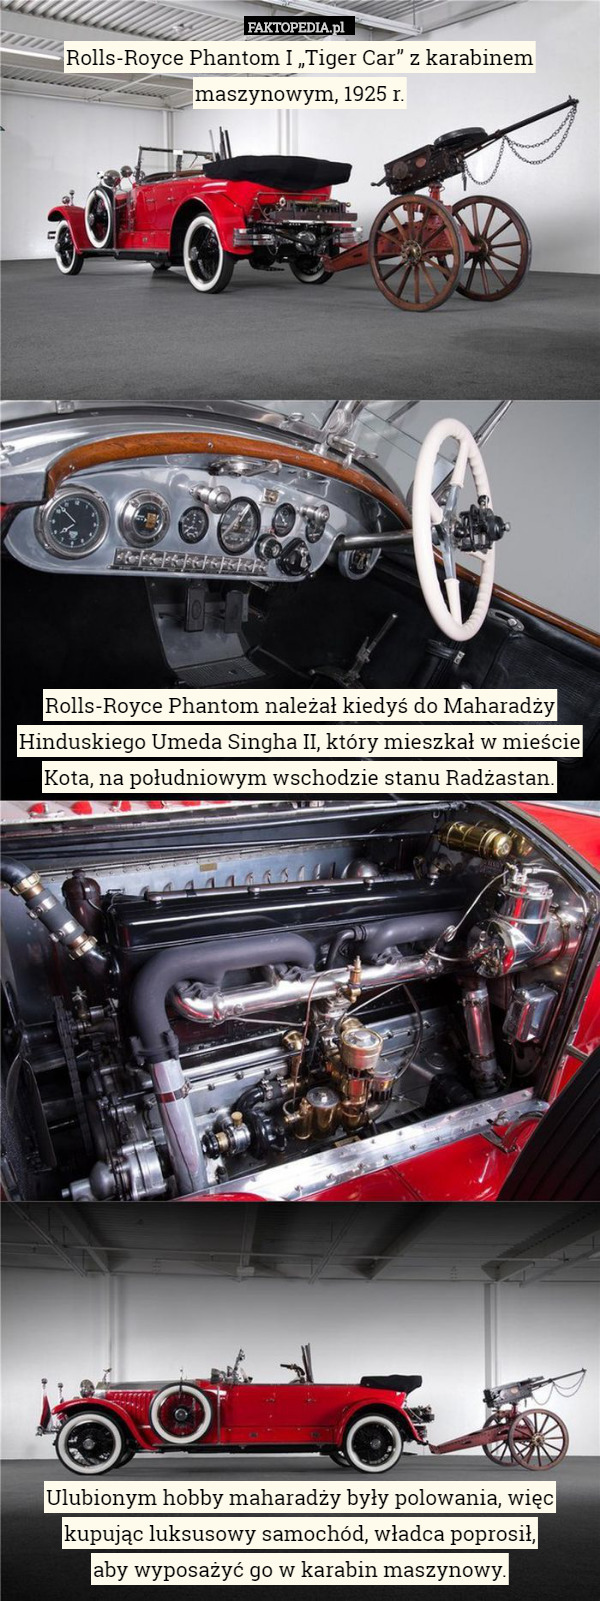 Rolls-Royce Phantom I „Tiger Car” z karabinem maszynowym, 1925 r.
















Rolls-Royce Phantom należał kiedyś do Maharadży Hinduskiego Umeda Singha II, który mieszkał w mieście Kota, na południowym wschodzie stanu Radżastan.



















Ulubionym hobby maharadży były polowania, więc kupując luksusowy samochód, władca poprosił,
 aby wyposażyć go w karabin maszynowy. 